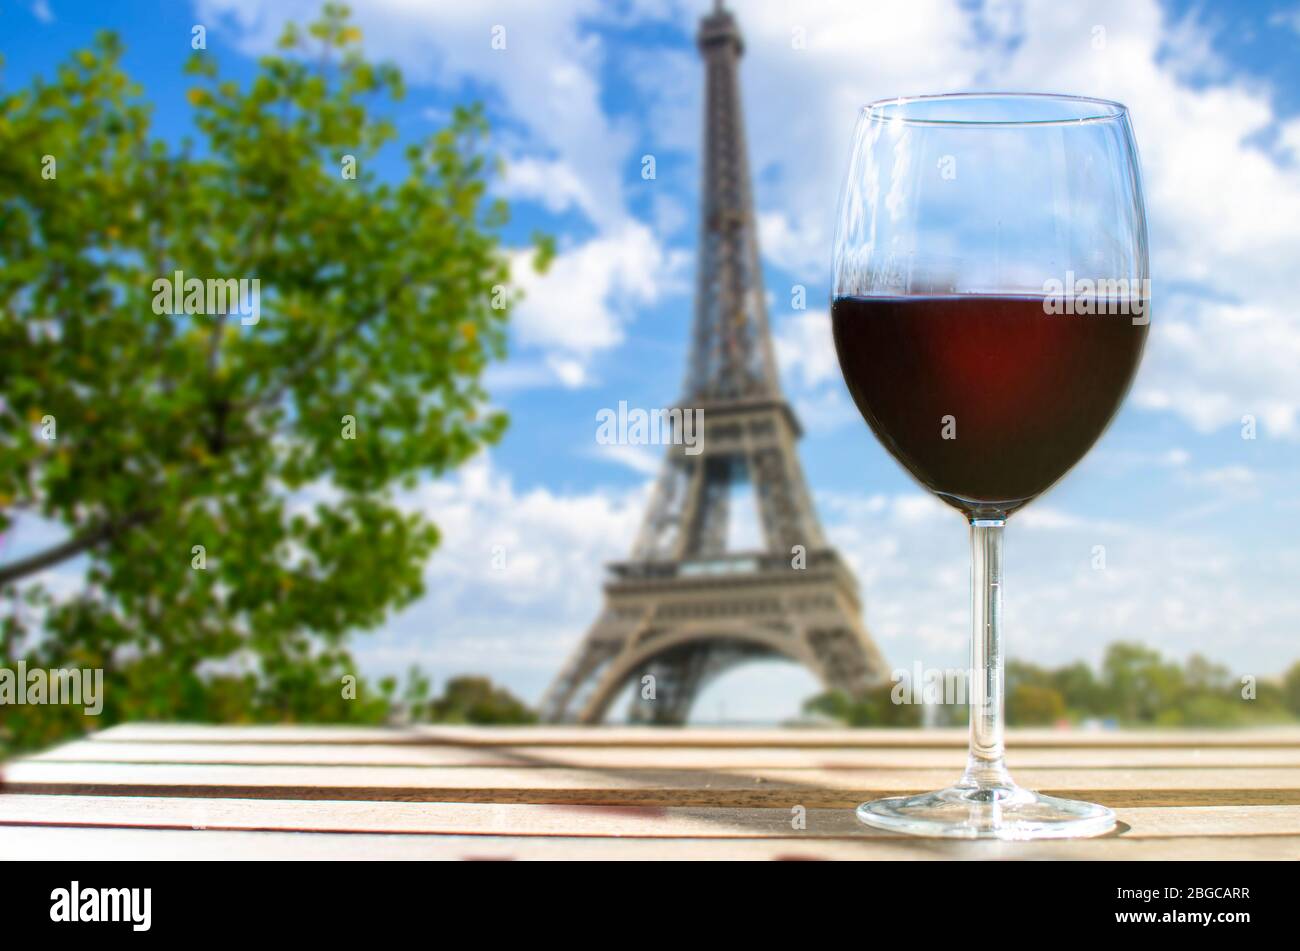 Glas Wein auf dem Eiffelturm verwischt den Hintergrund. Sonniger Blick auf das Glas Rotwein mit Blick auf den Eiffelturm in Paris, Frankreich Stockfoto